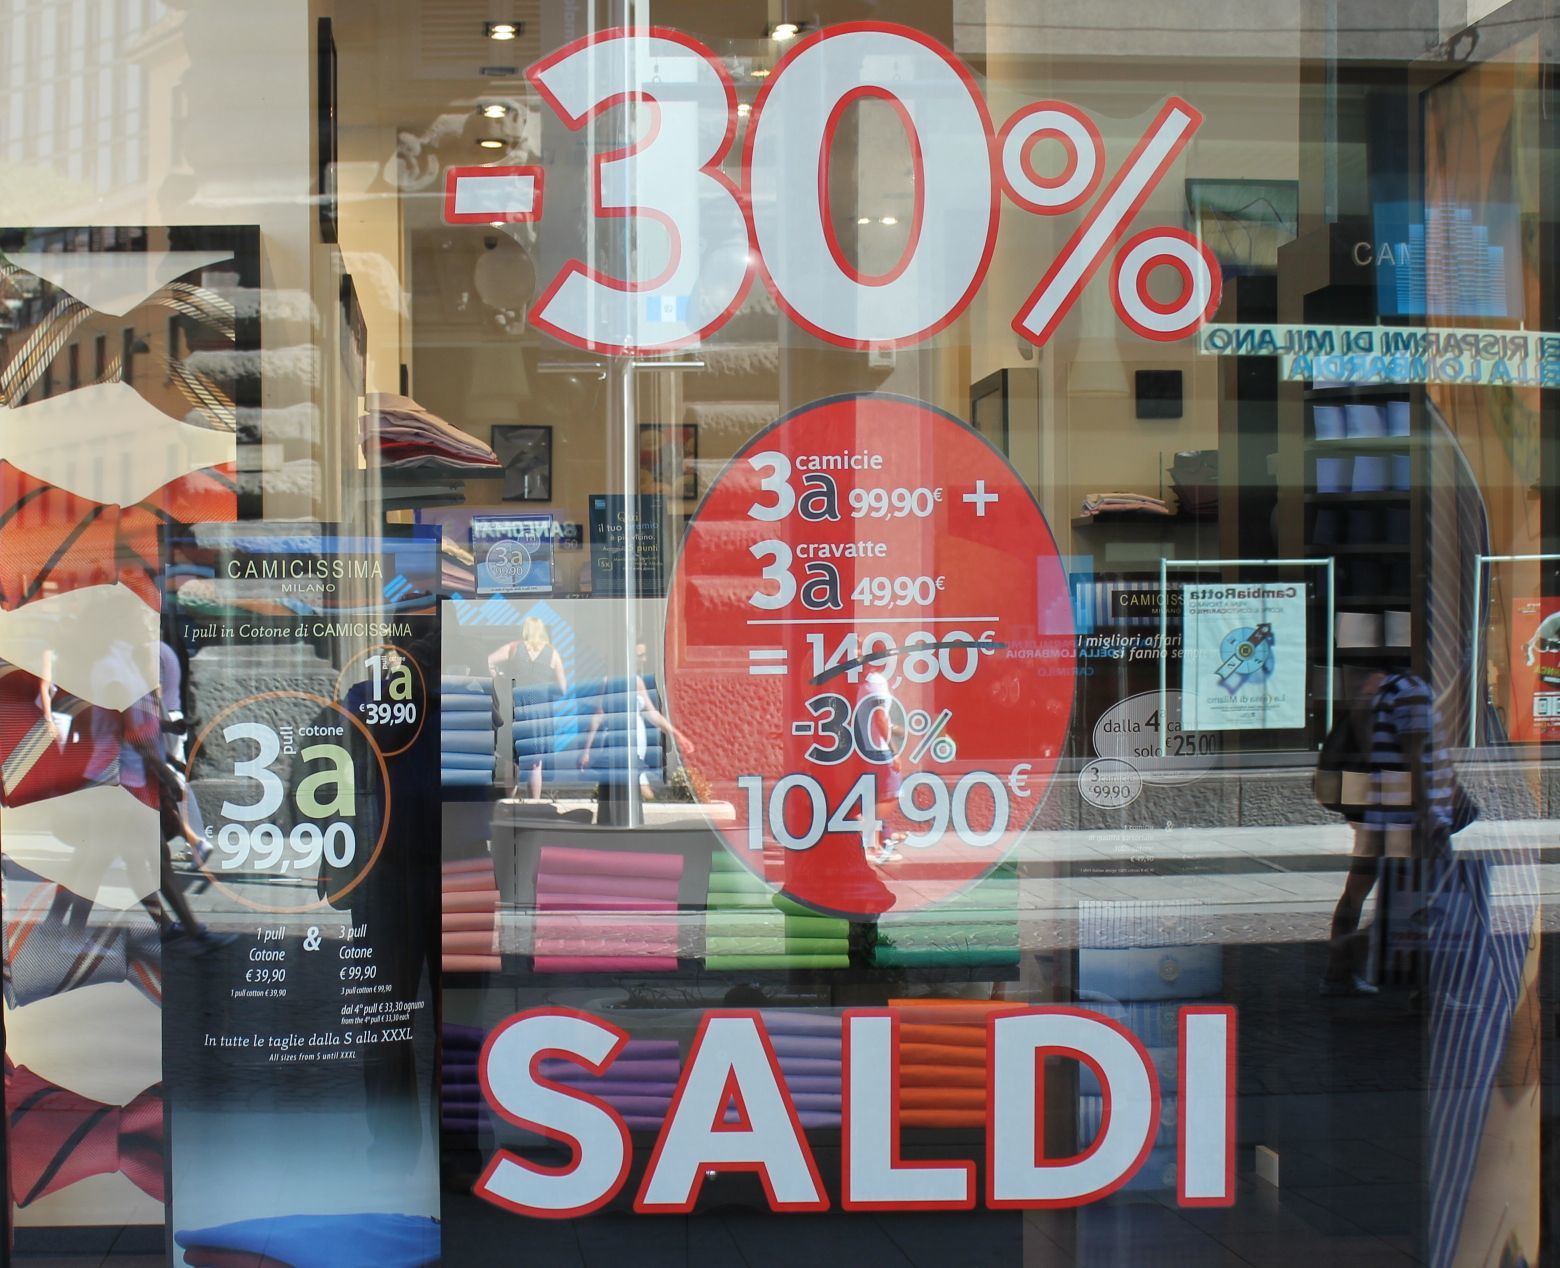 Άρχισαν οι εκπτώσεις στην Ιταλία αλλά οι καταναλωτές είναι συγκρατημένοι